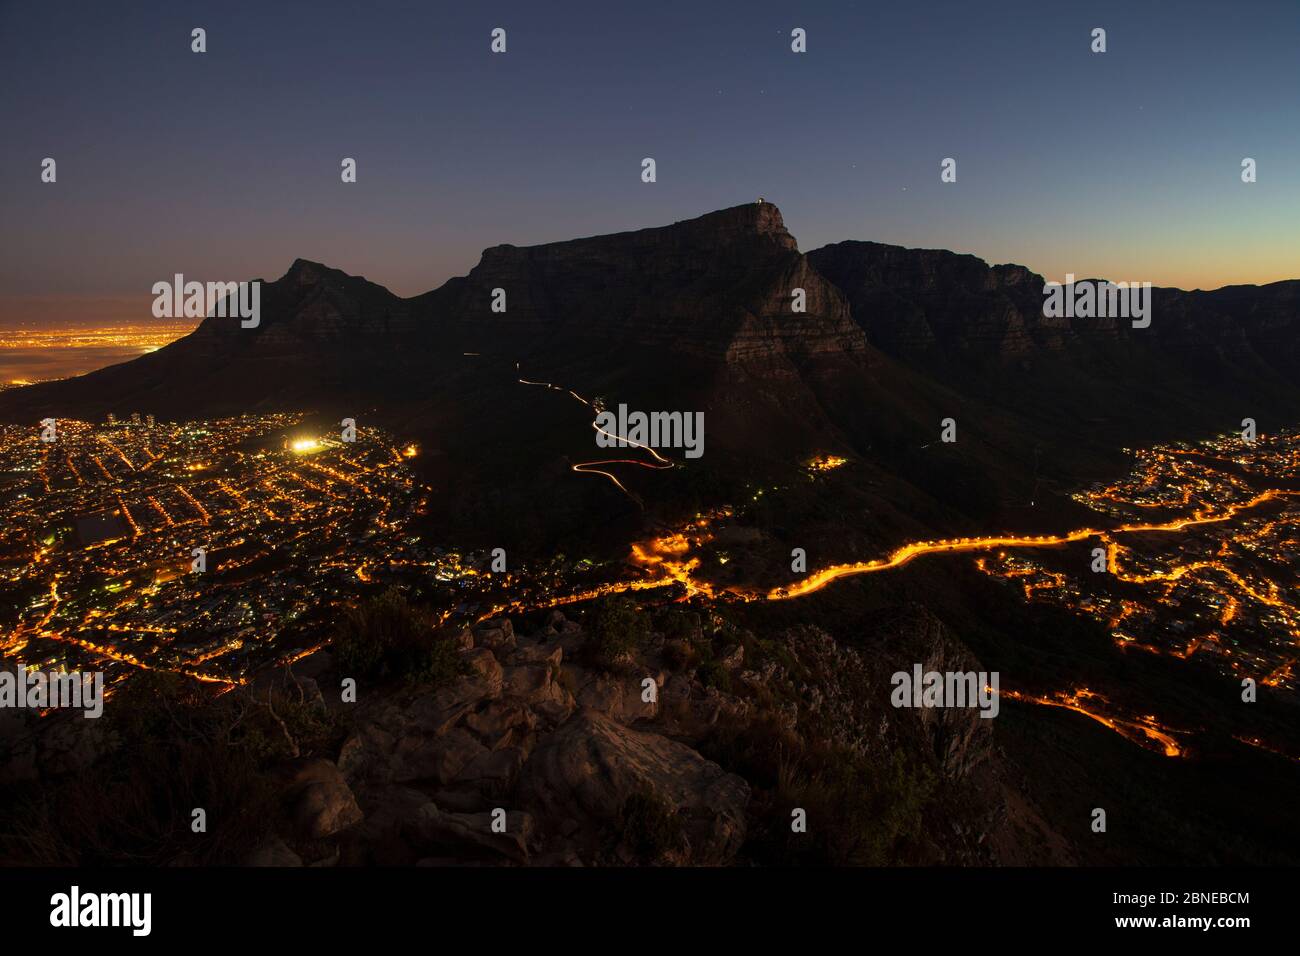 La montagne de la Table et la ville du Cap, vue de nuit depuis Lions Head, Afrique du Sud Banque D'Images